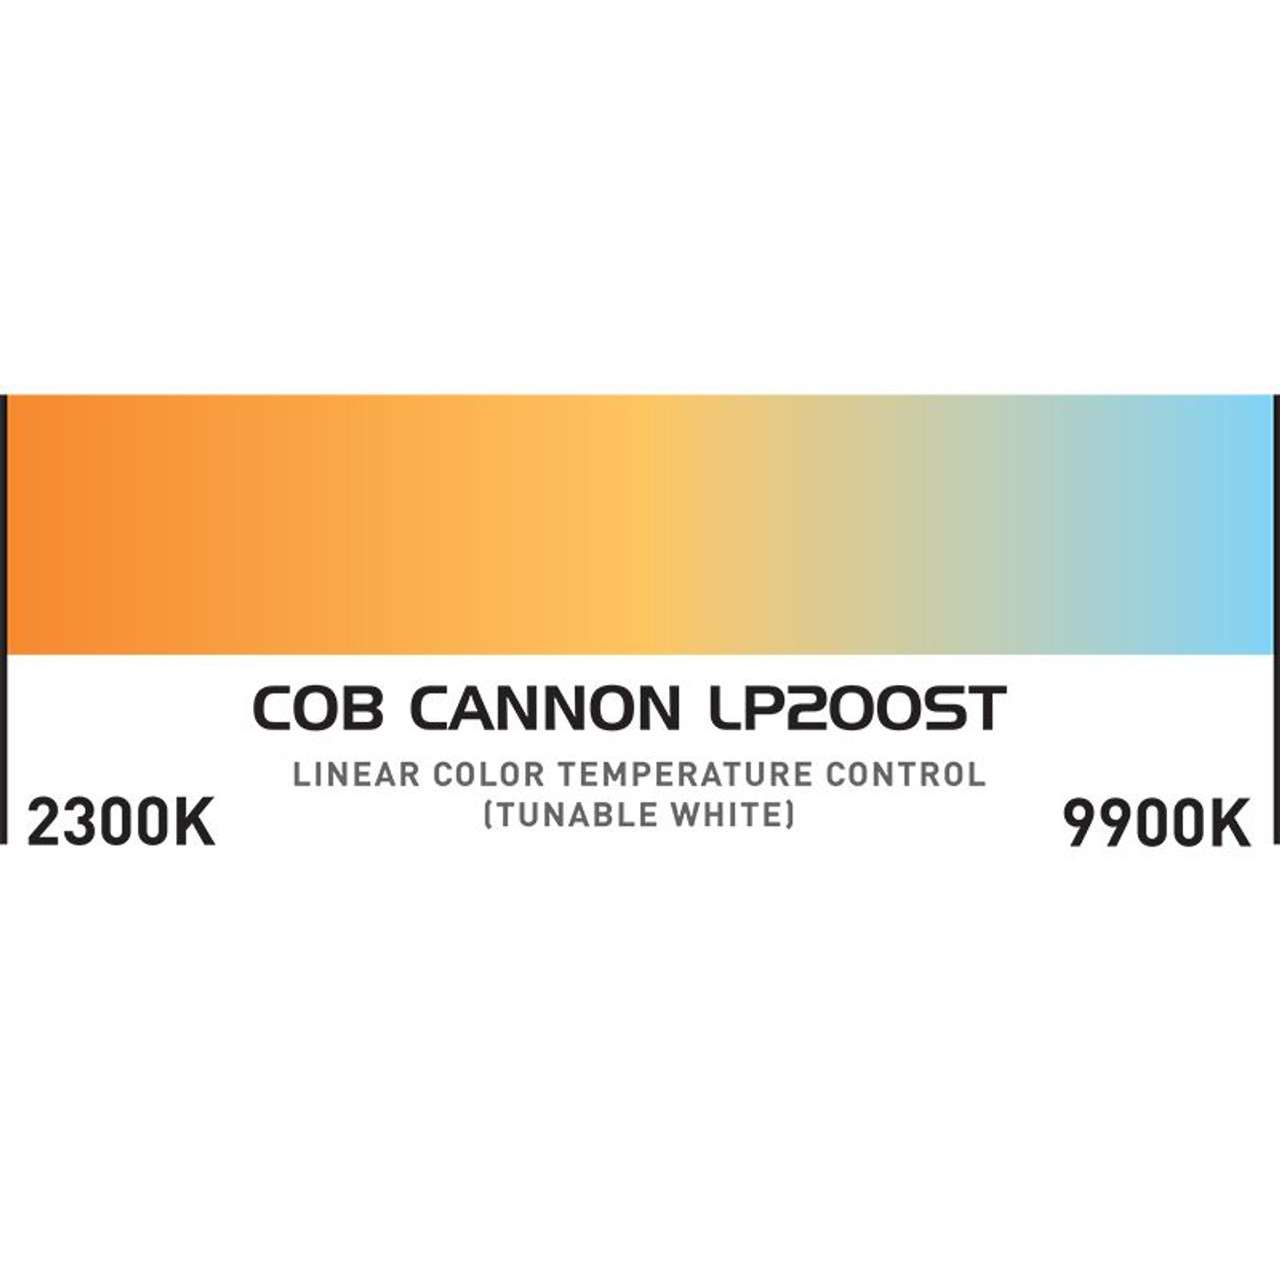 COB Cannon LP200ST